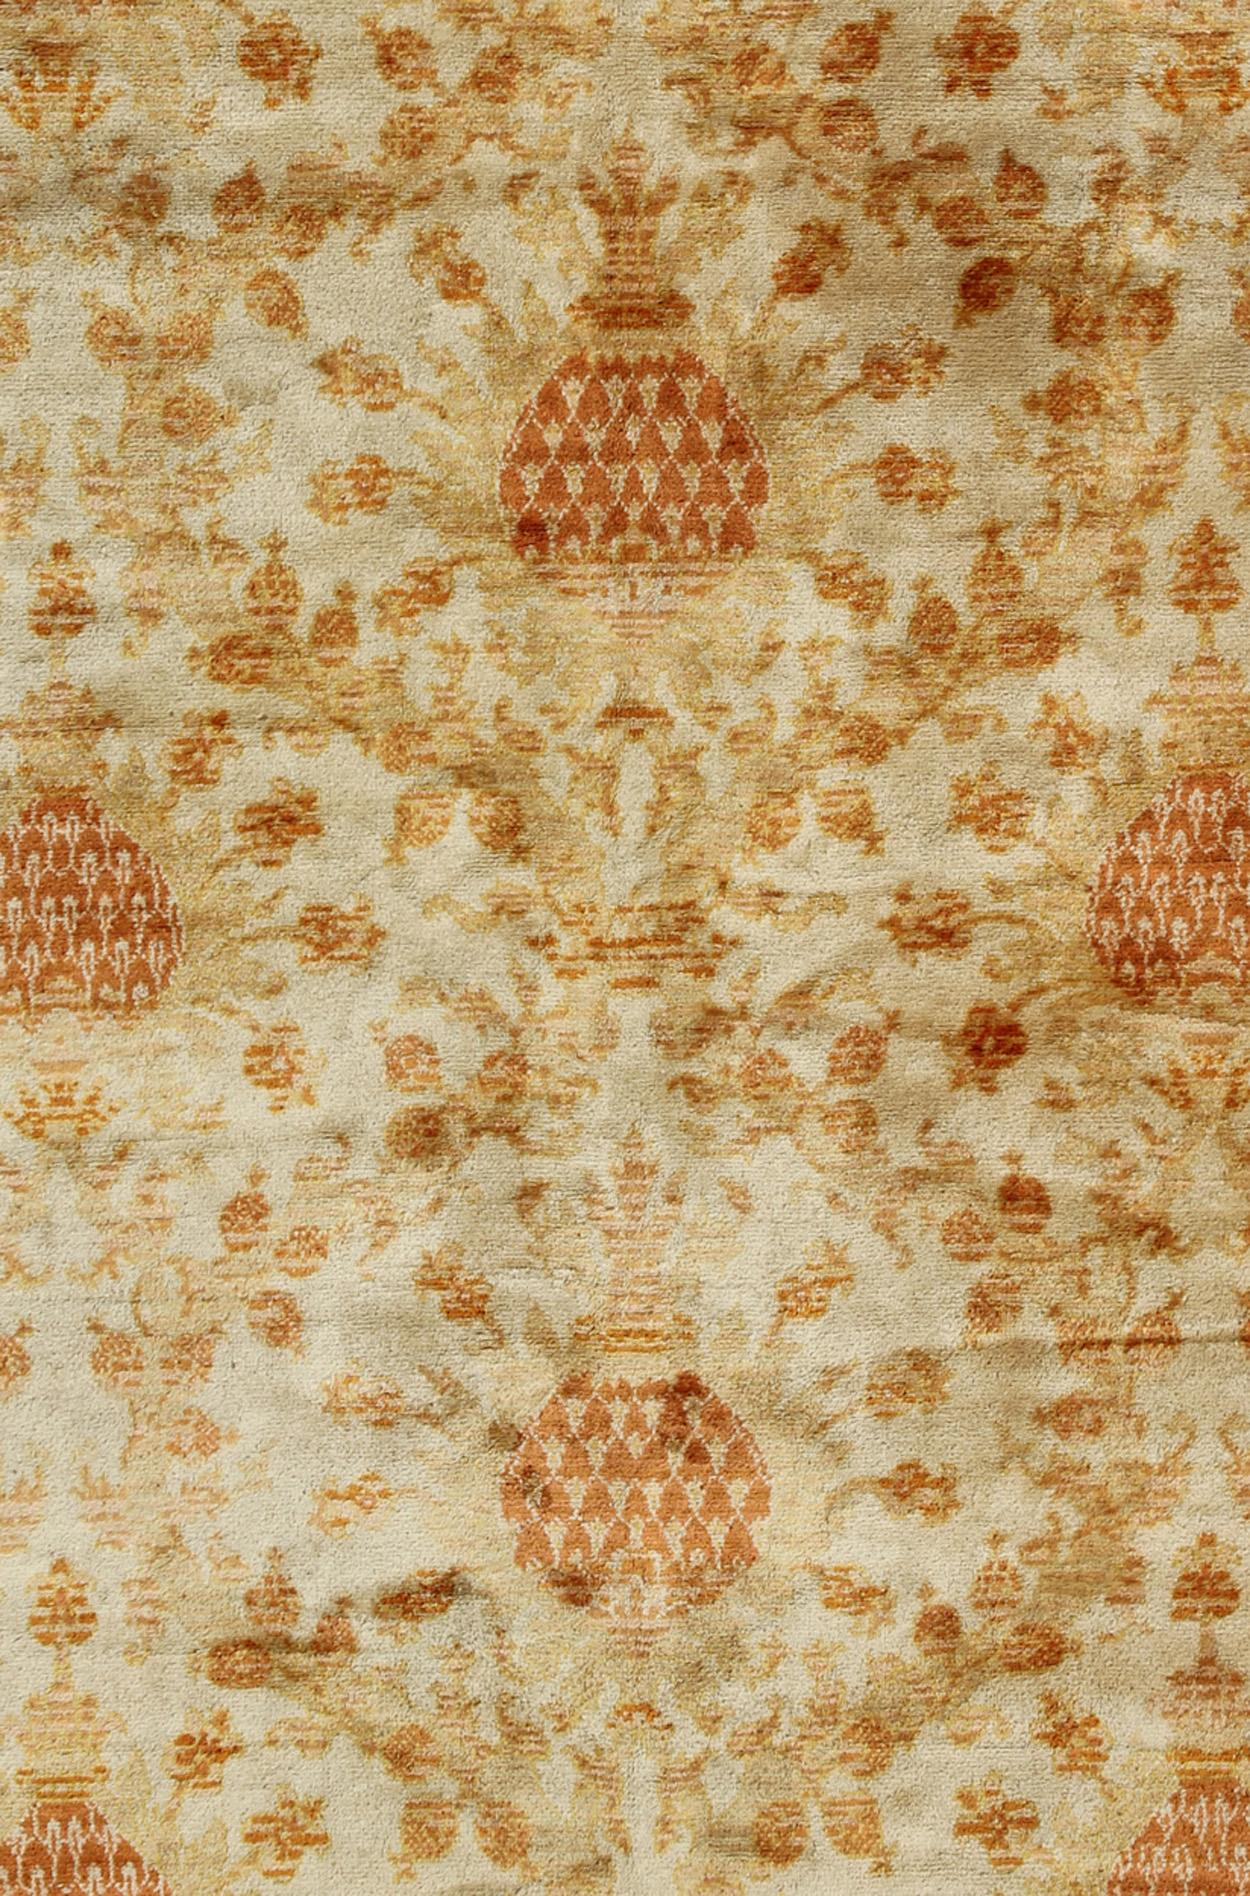 Antique Spanish European Carpet with Pineapple Design in Gold, Cream & Tangerine For Sale 2